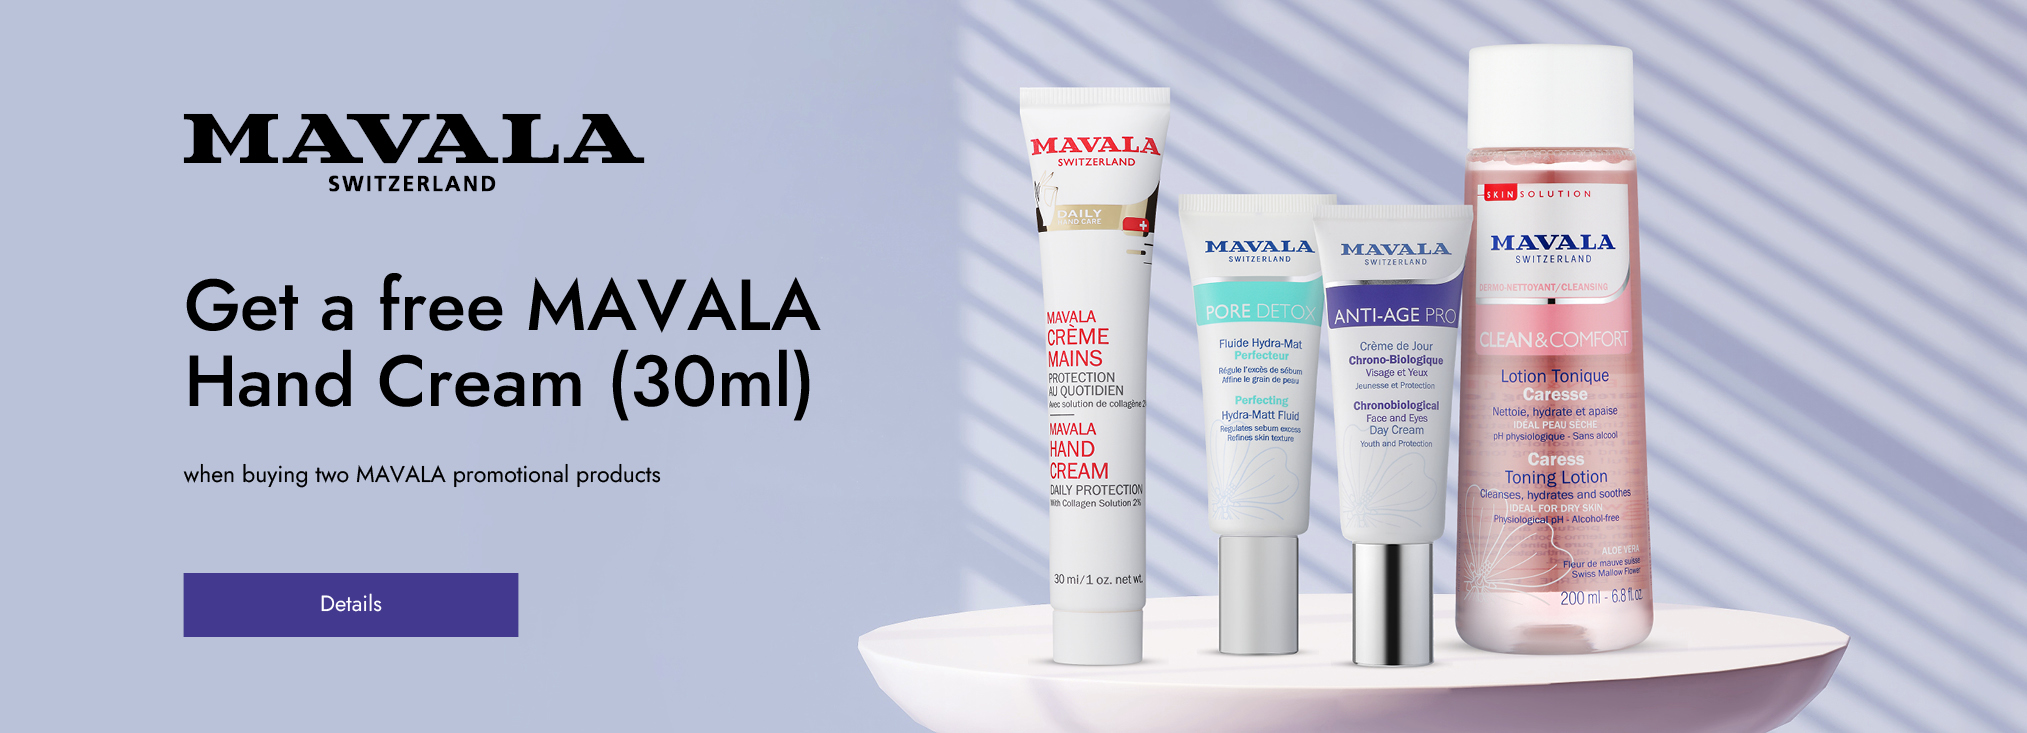 MAVALA_hand care